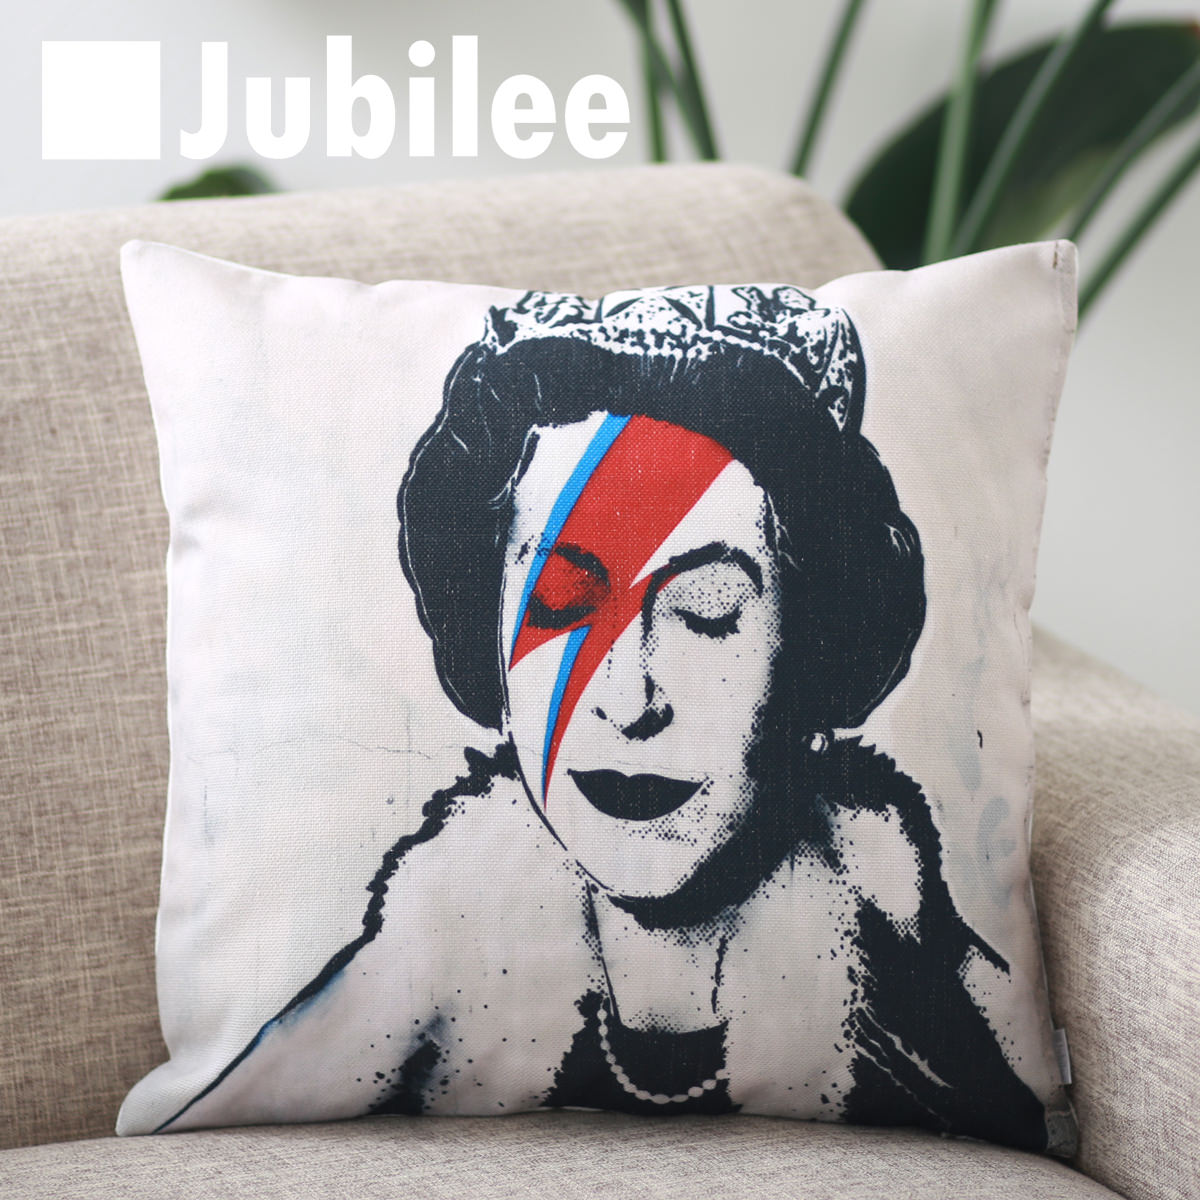 【バンクシー Banksy クッションカバー】 Bowie Paint Elizabeth 北欧デザイン 45 45cm リネン Jubilee London 天然の麻を含んだハンドメイド プレゼント ギフト レトロスタイル 新生活 新居 …